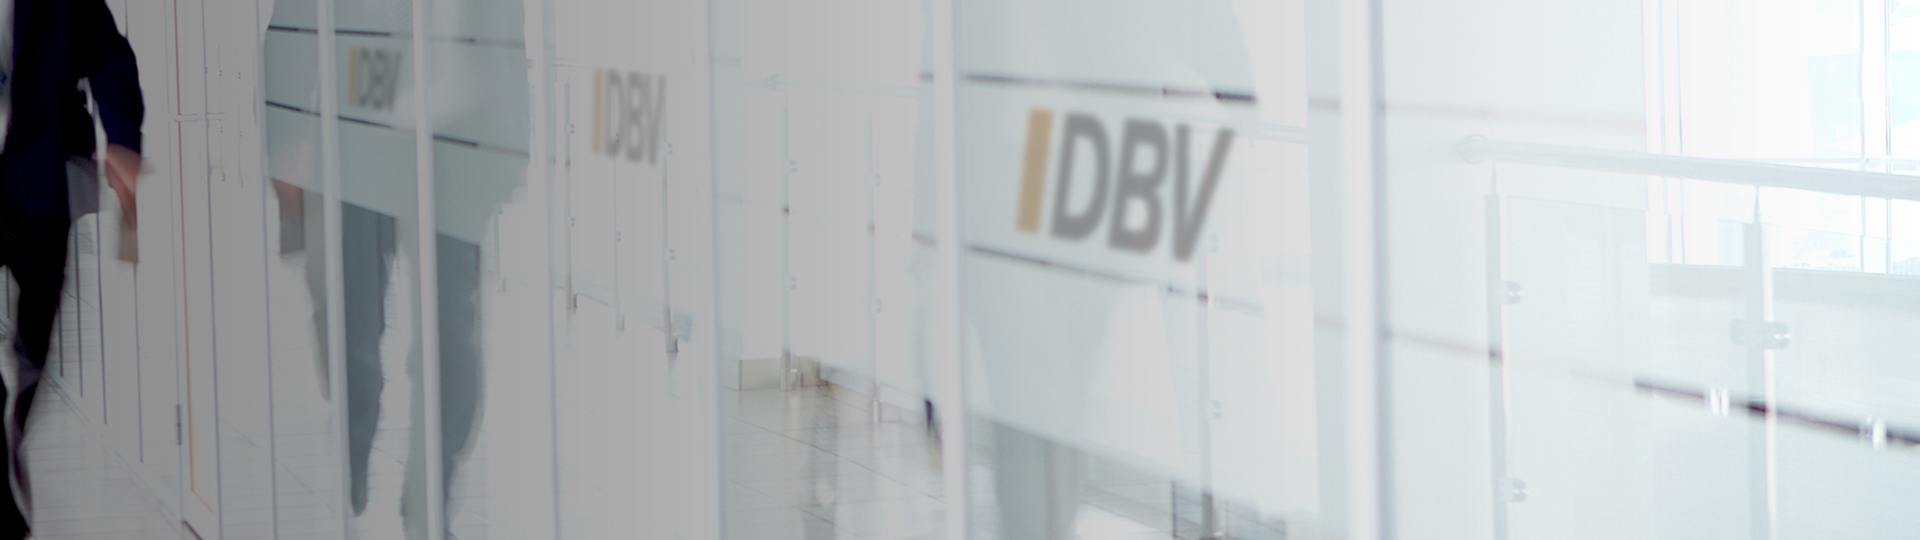 DBV Hannover Hornig & Knoch oHG | Grundwissen Versicherung